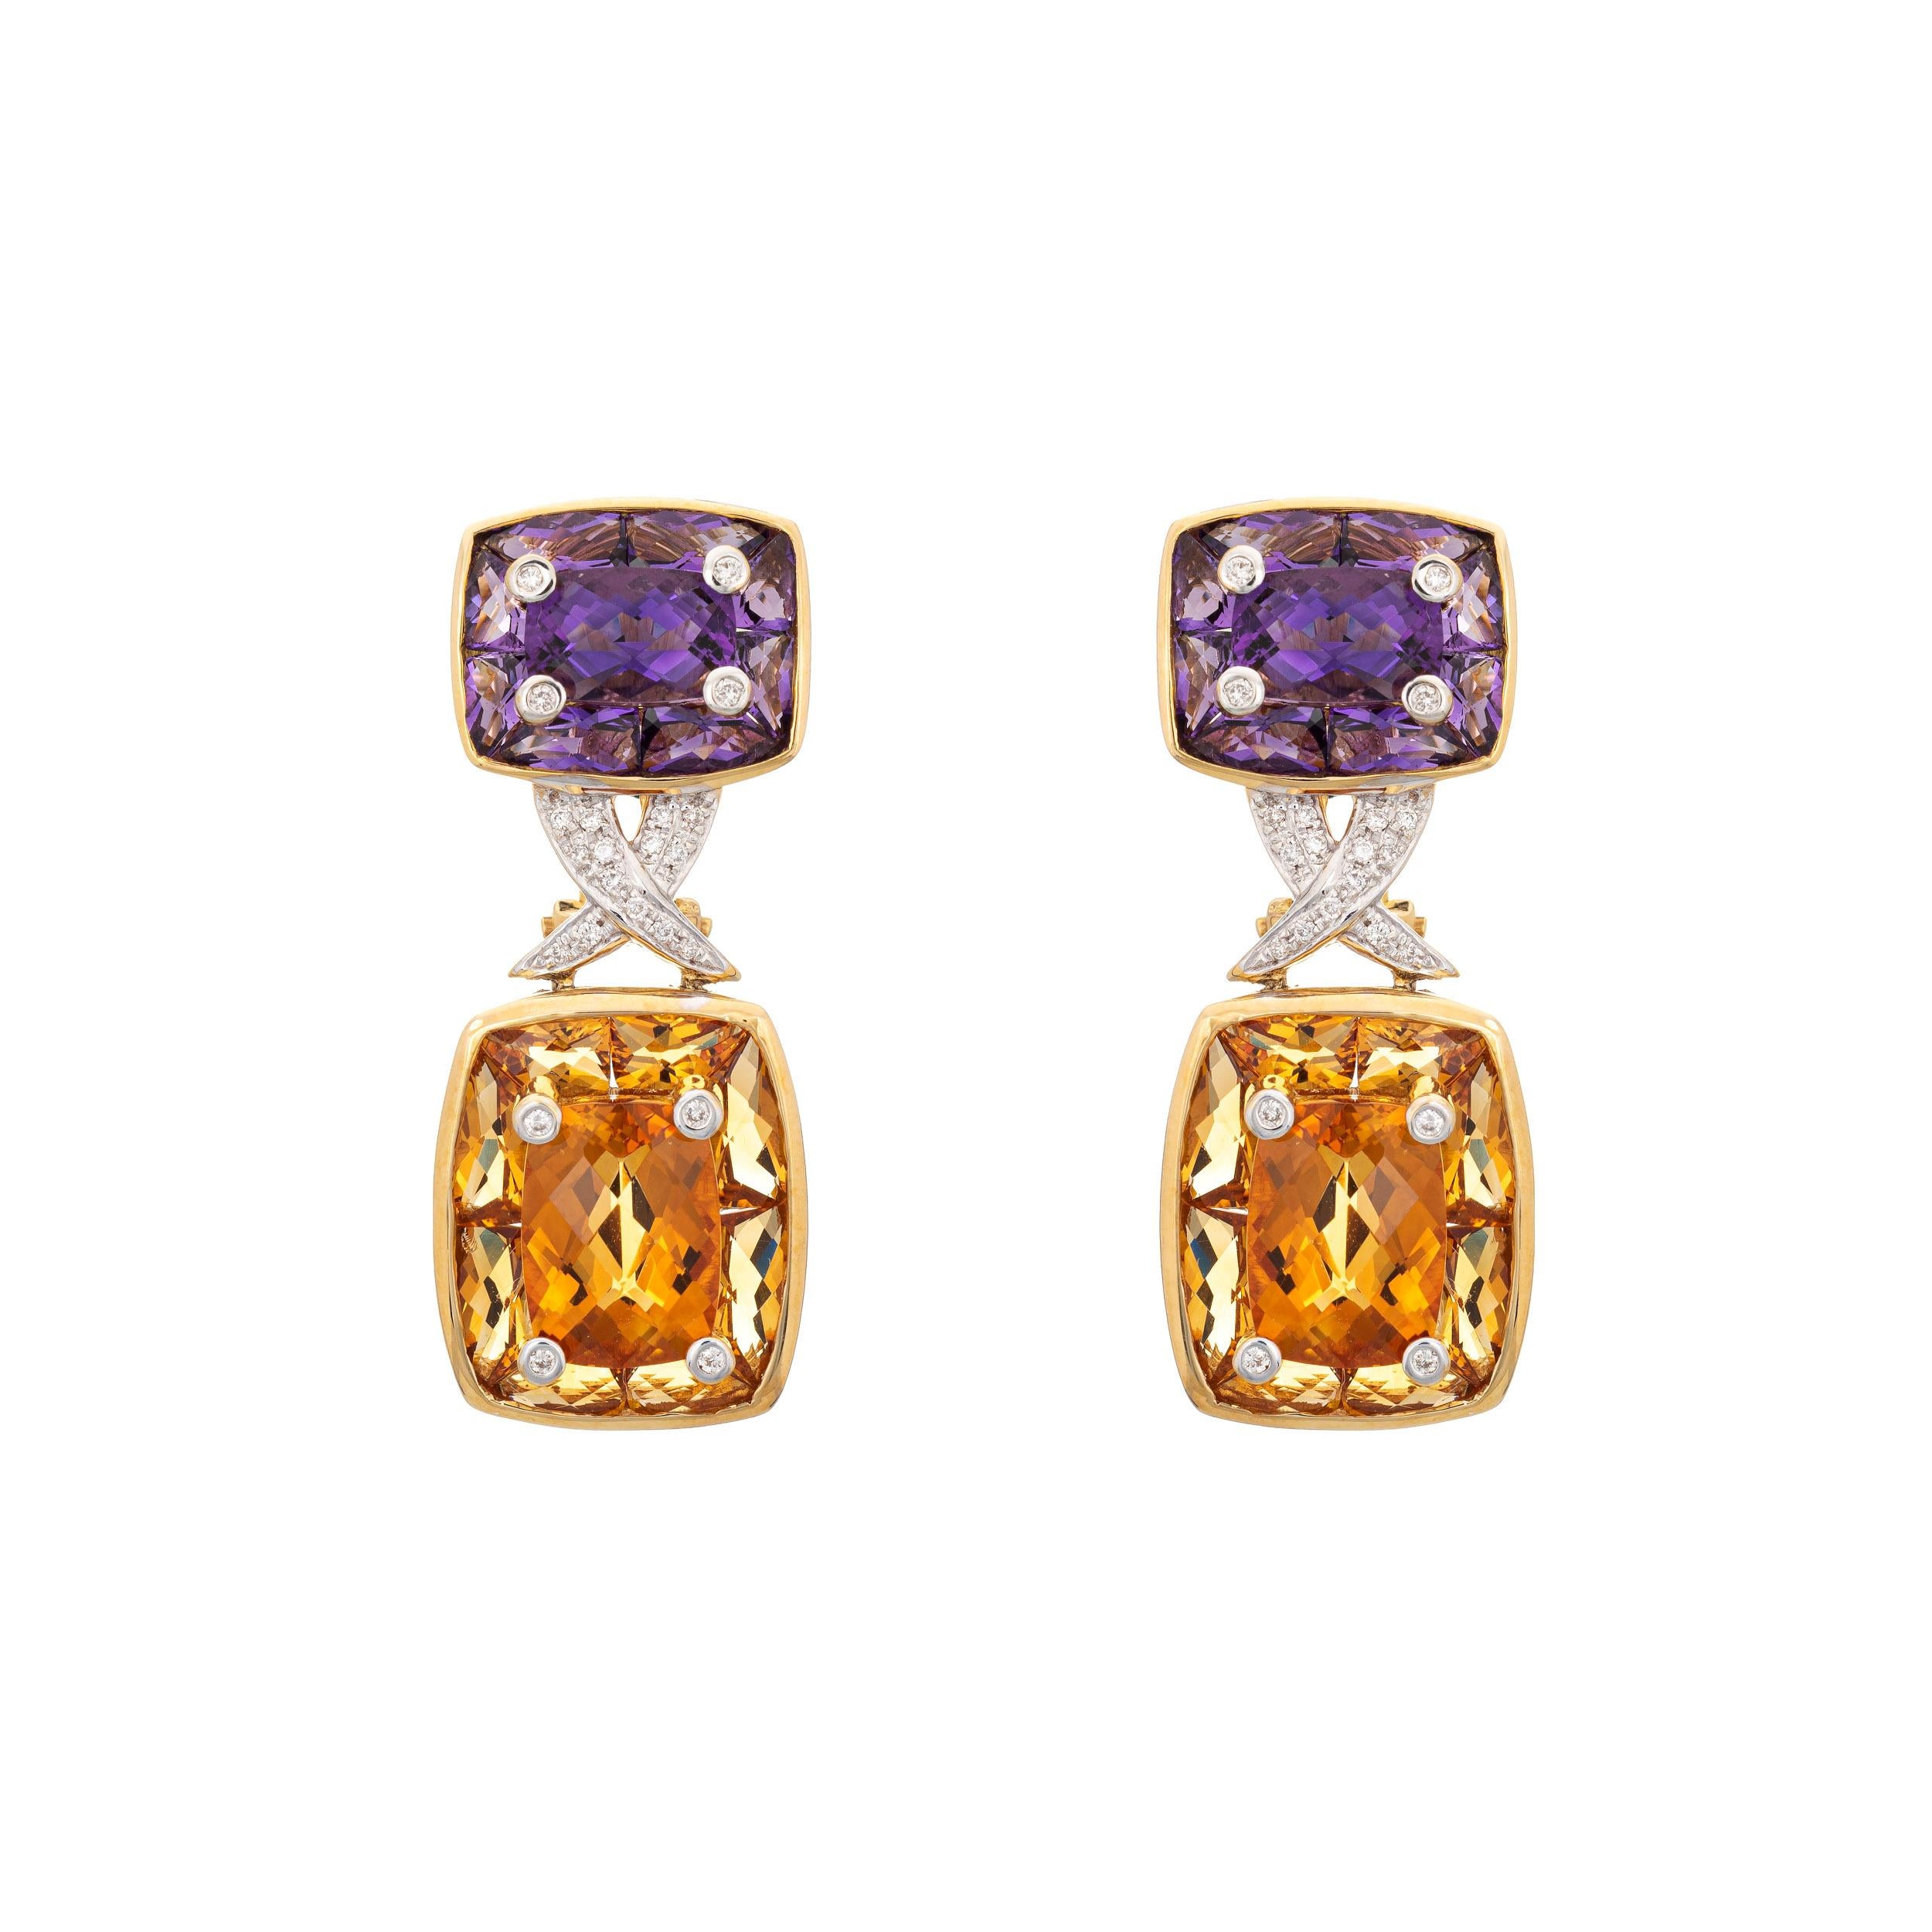 Modern Amethyst Citrine Earrings Estate 18k Yellow Gold Diamond Drops Jewelry